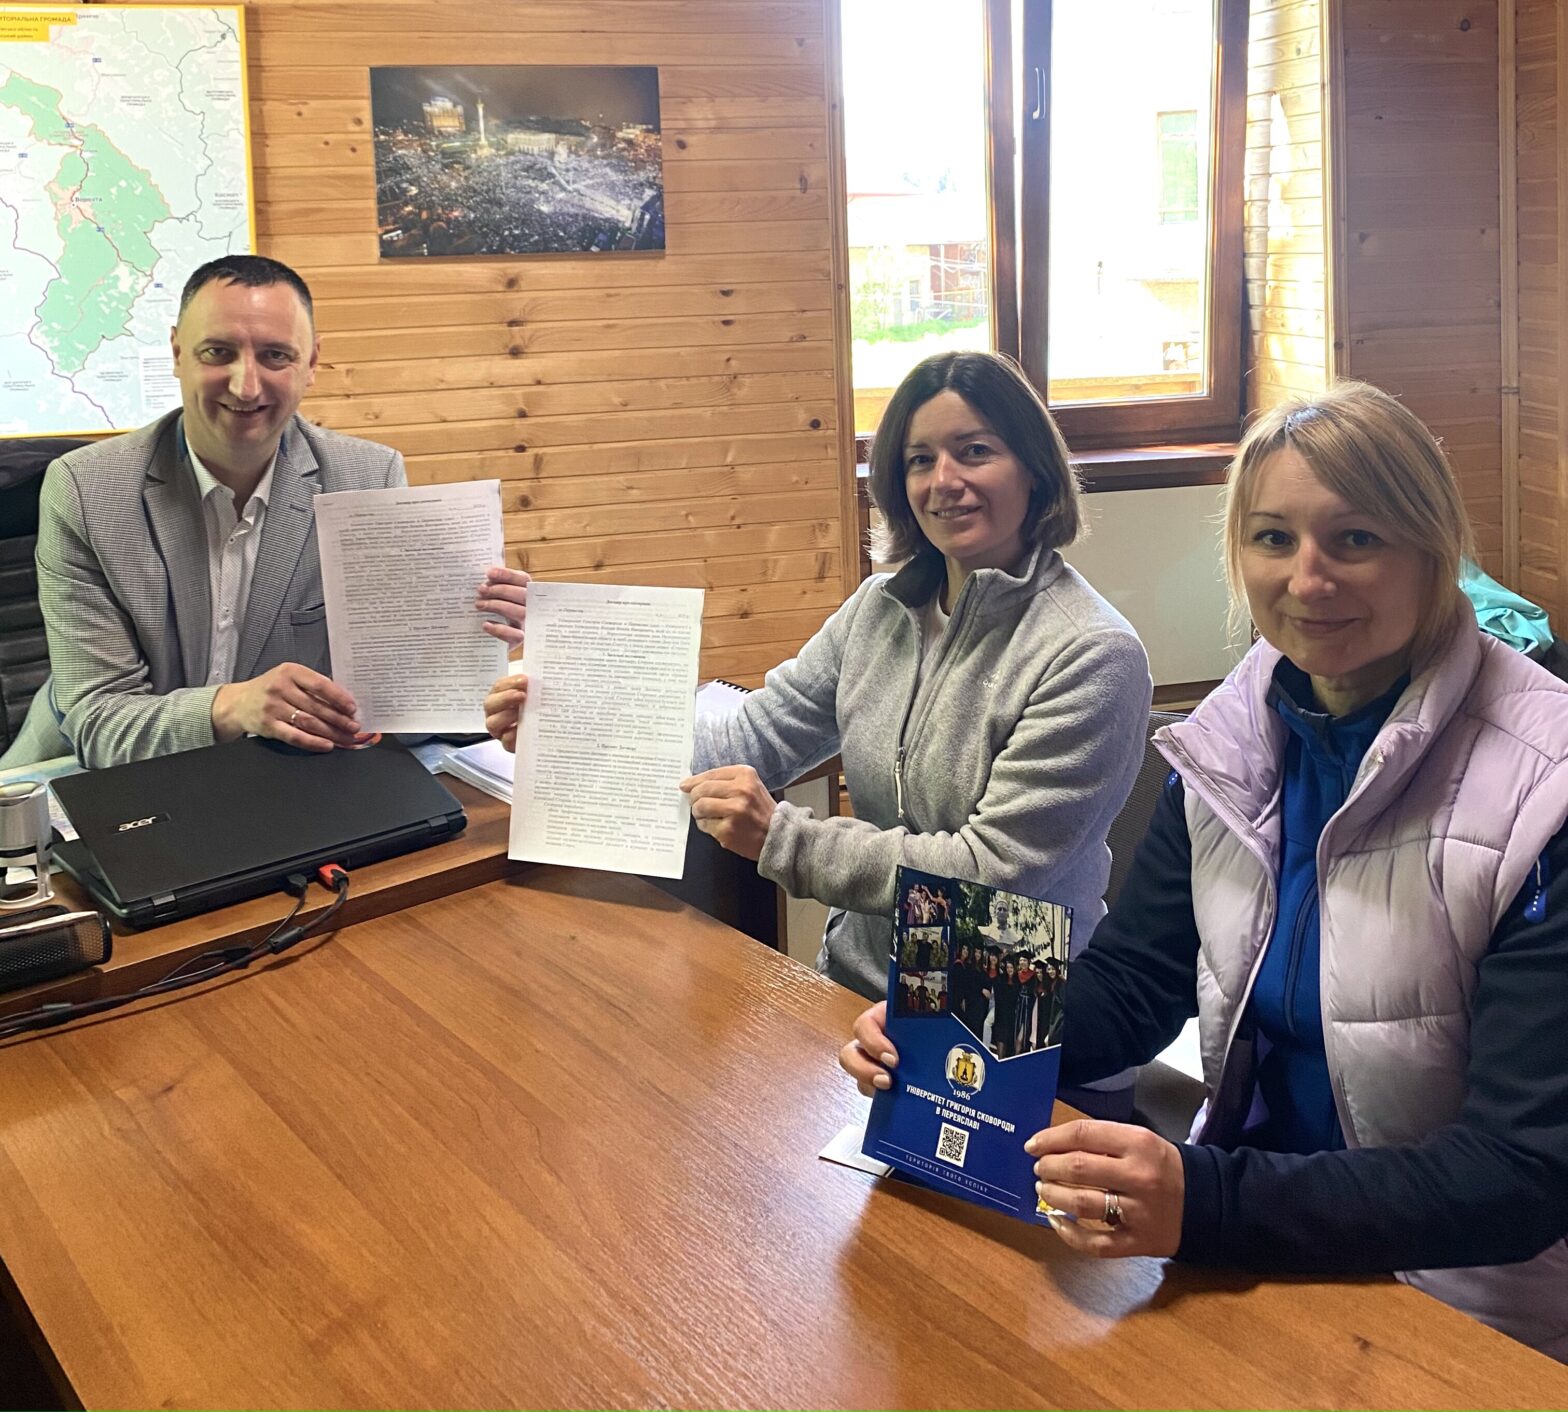 Сьогодні підписаний договір про співпрацю між Ворохтянською селищною радою та Університетом Григорія Сковороди міста Переяслав.